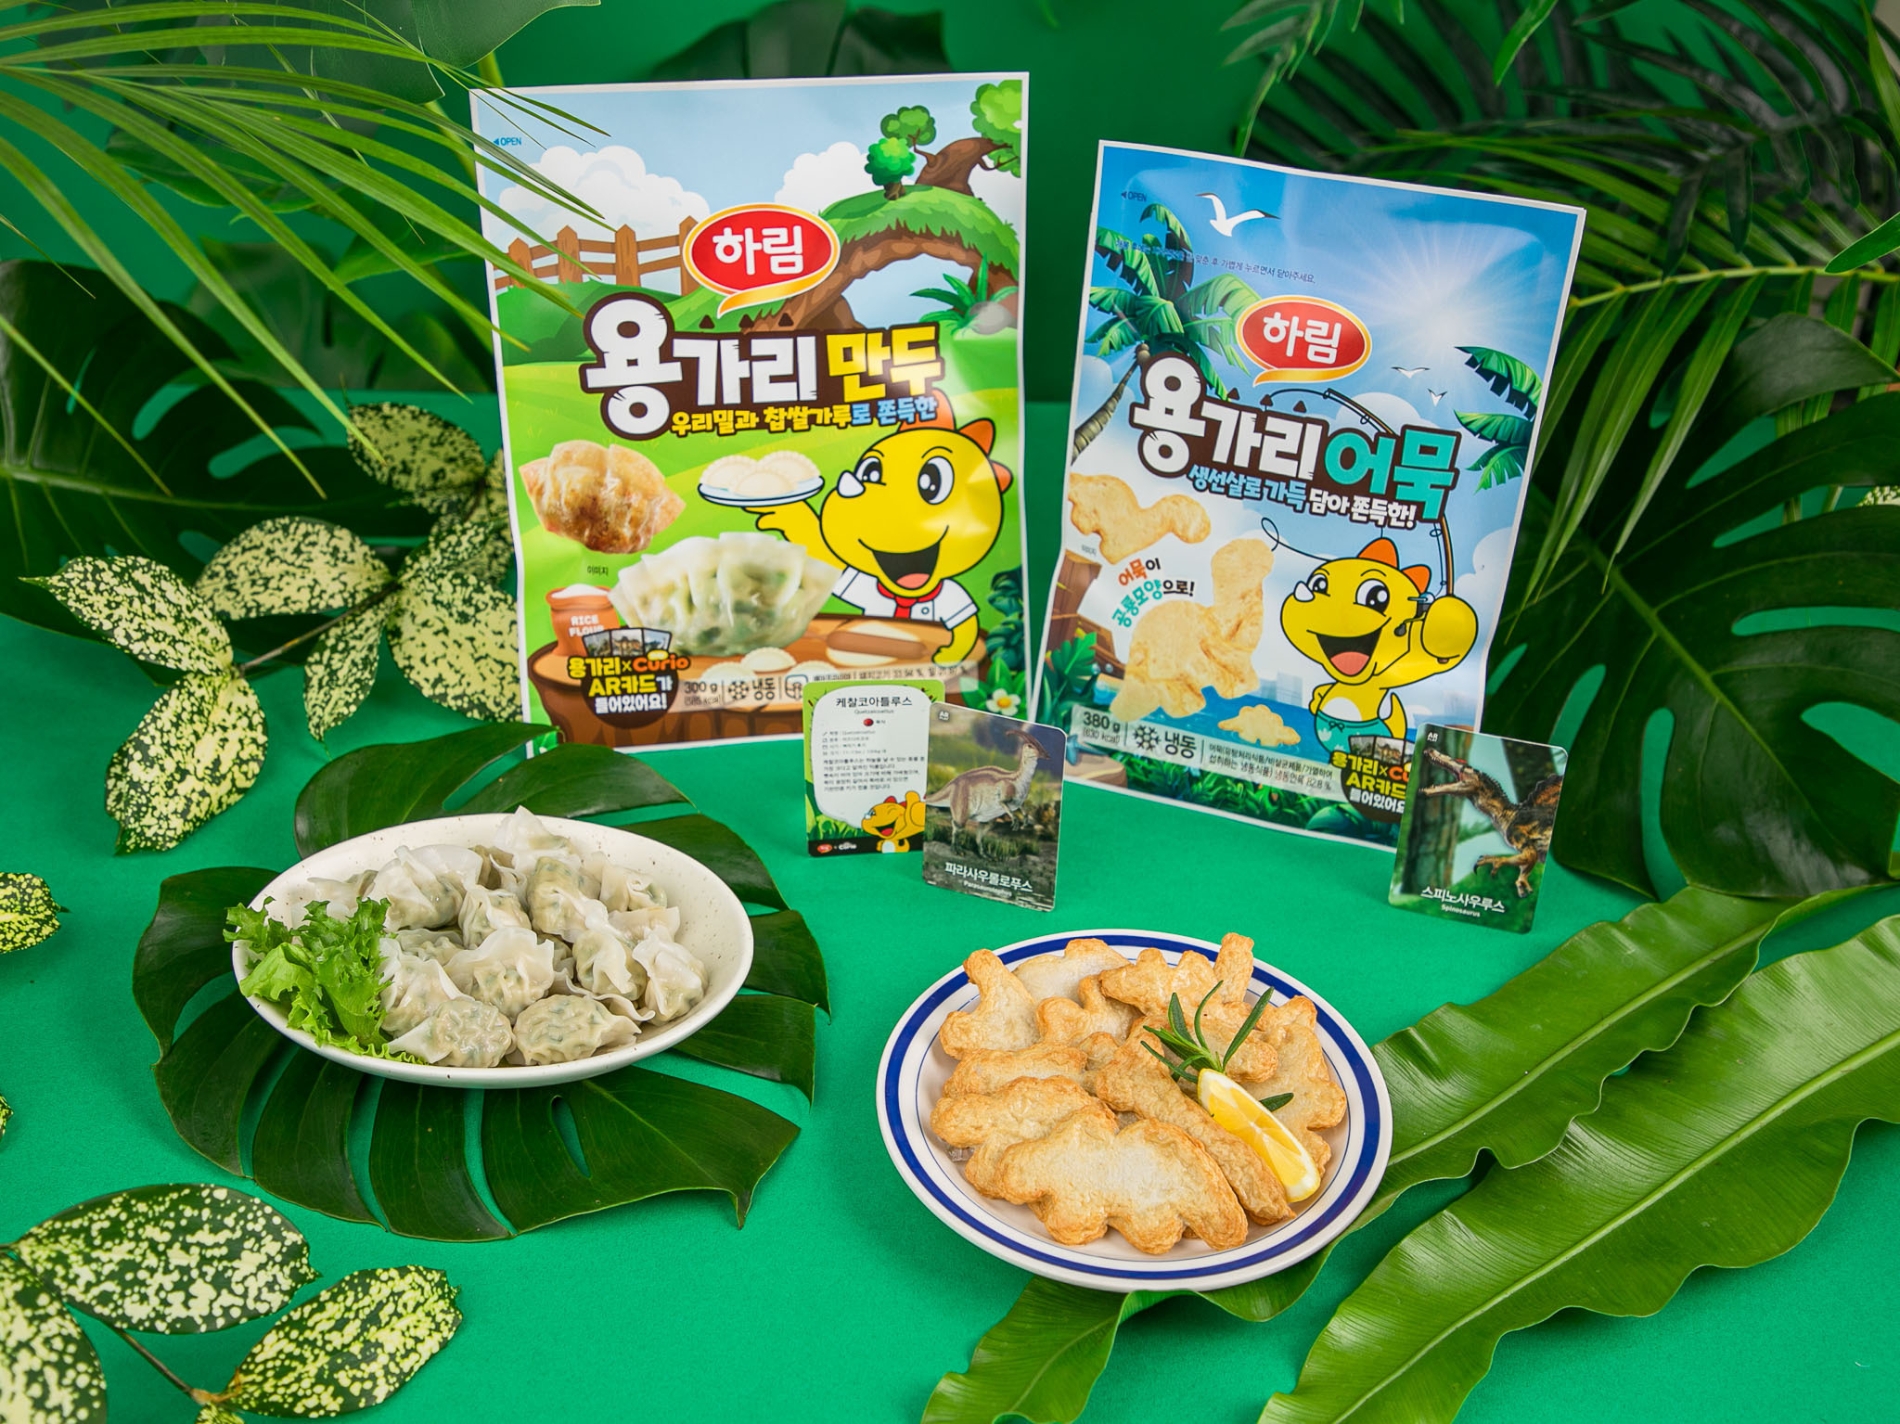 하림 ‘용가리 어묵’과 ‘용가리 만두’ 제품./ 사진 = 하림